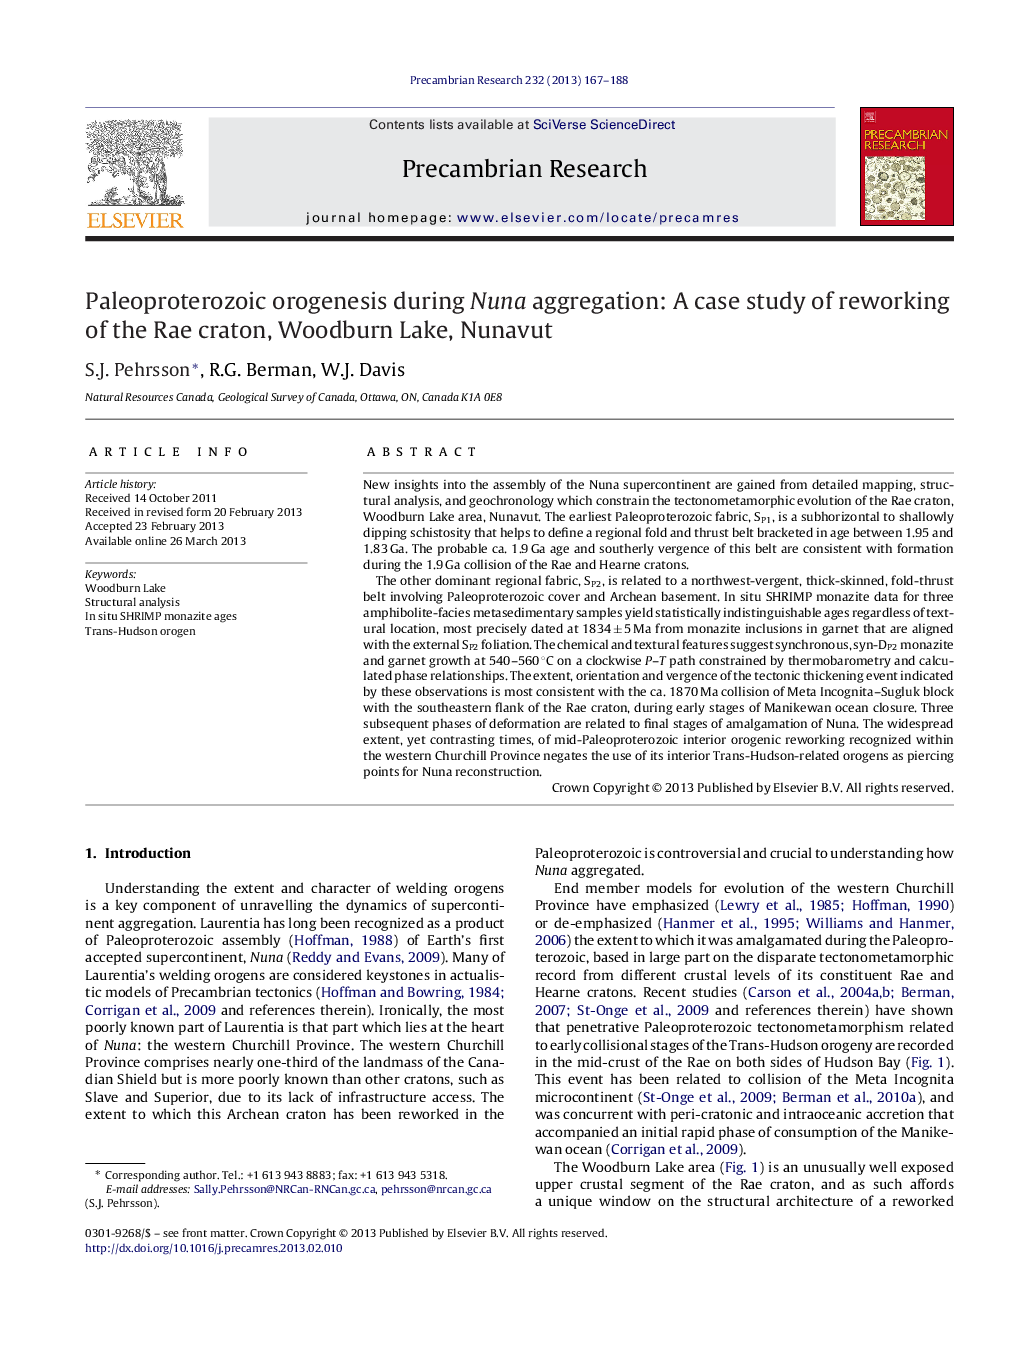 اوروژنز پالئوپروتروزوییک در طی تجمع نونا: یک مطالعه موردی از تجدید ساختار کوه رائه، دریاچه وودبورن، نونووت 